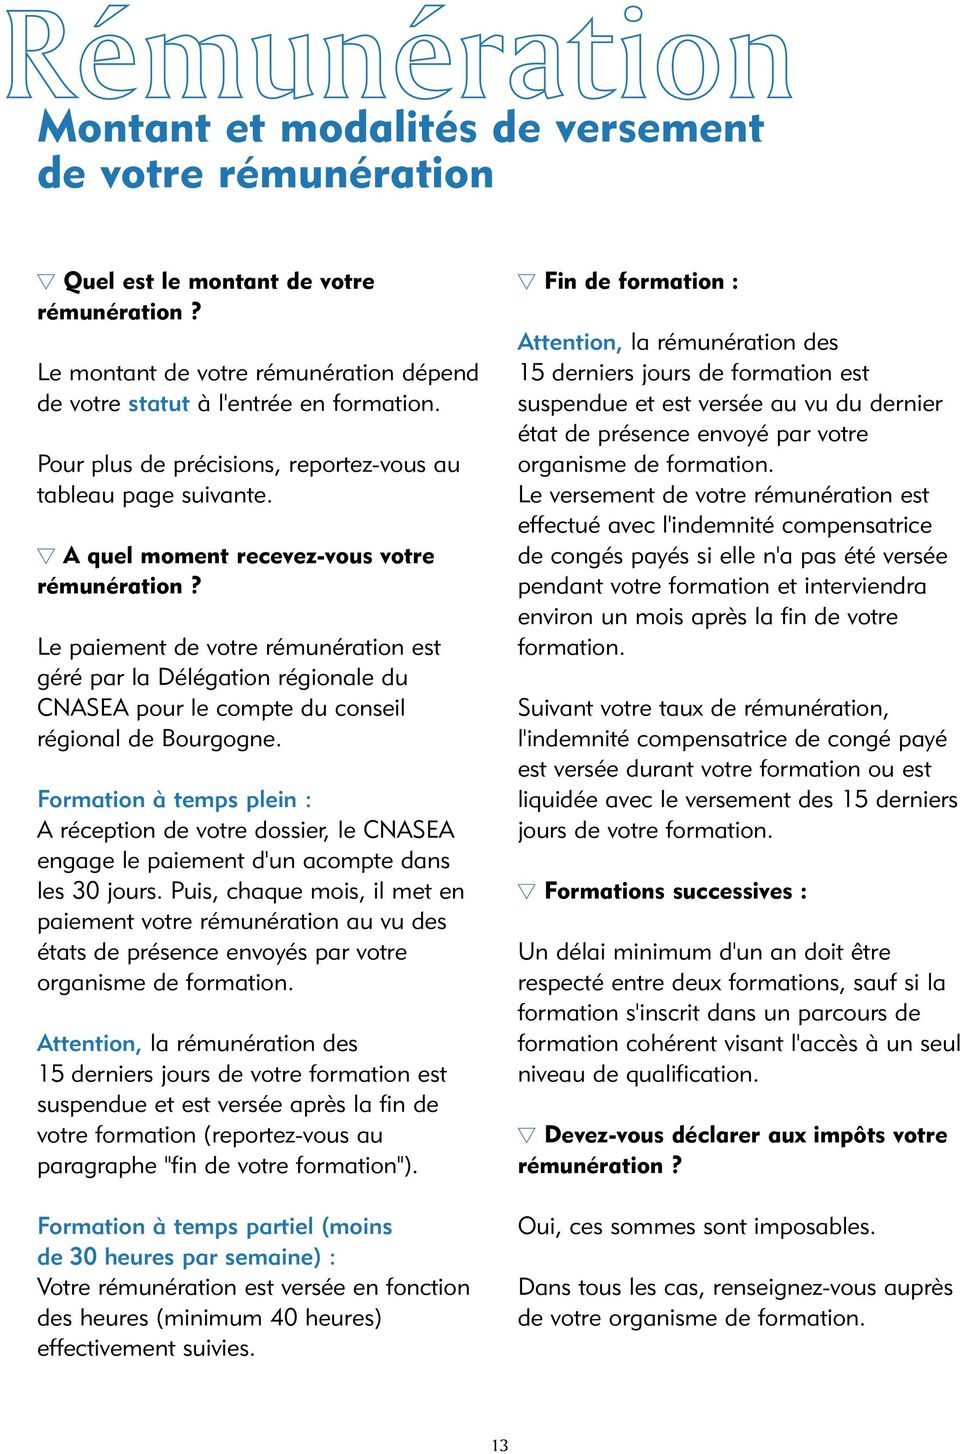 Le paiement de votre rémunération est géré par la Délégation régionale du CNASEA pour le compte du conseil régional de Bourgogne.